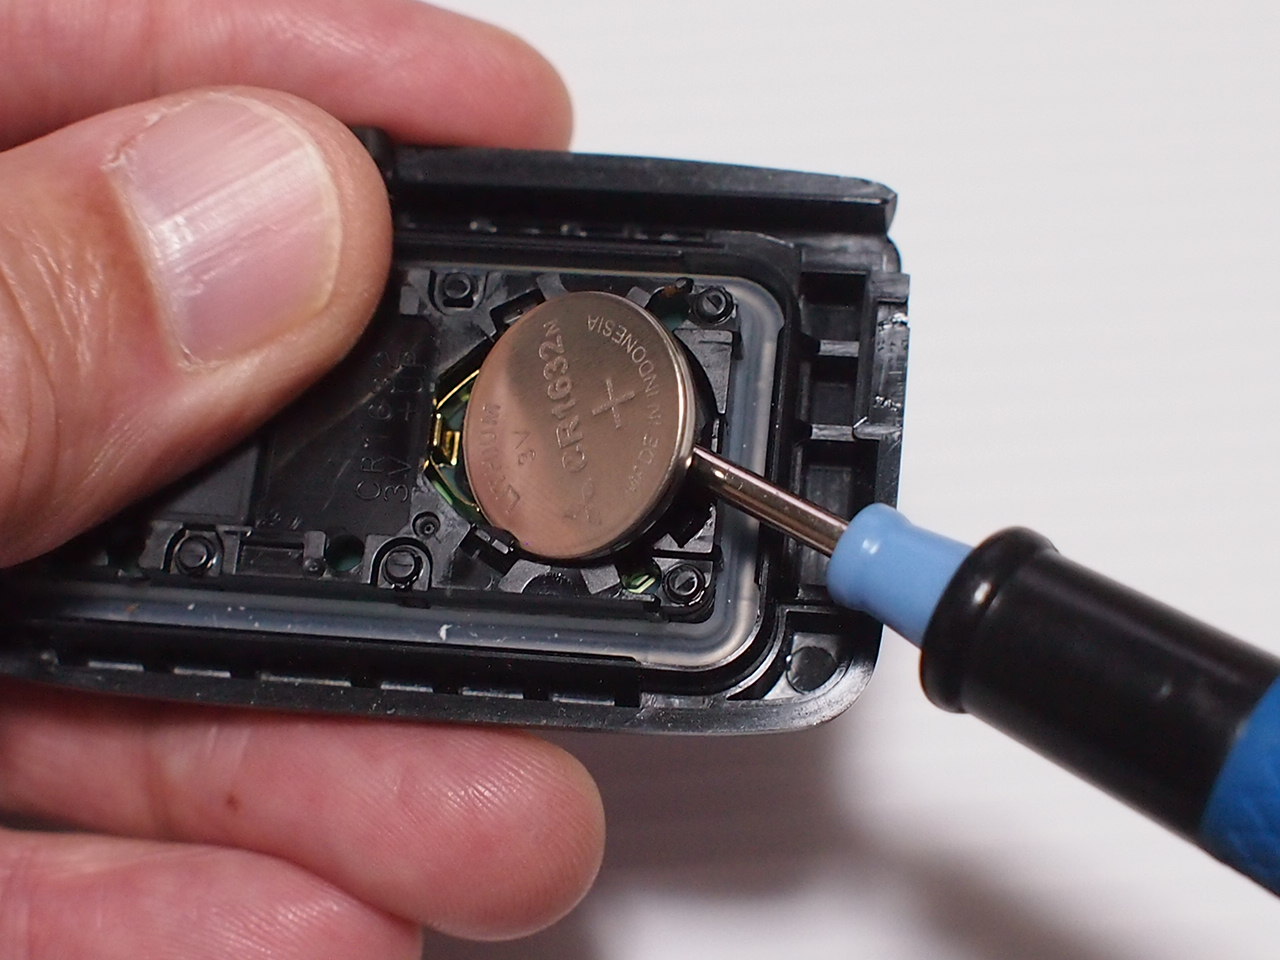 トヨタアクア・スマートキーの電池交換の方法・画像と動画で実録紹介します。 | スナフキンずライフ